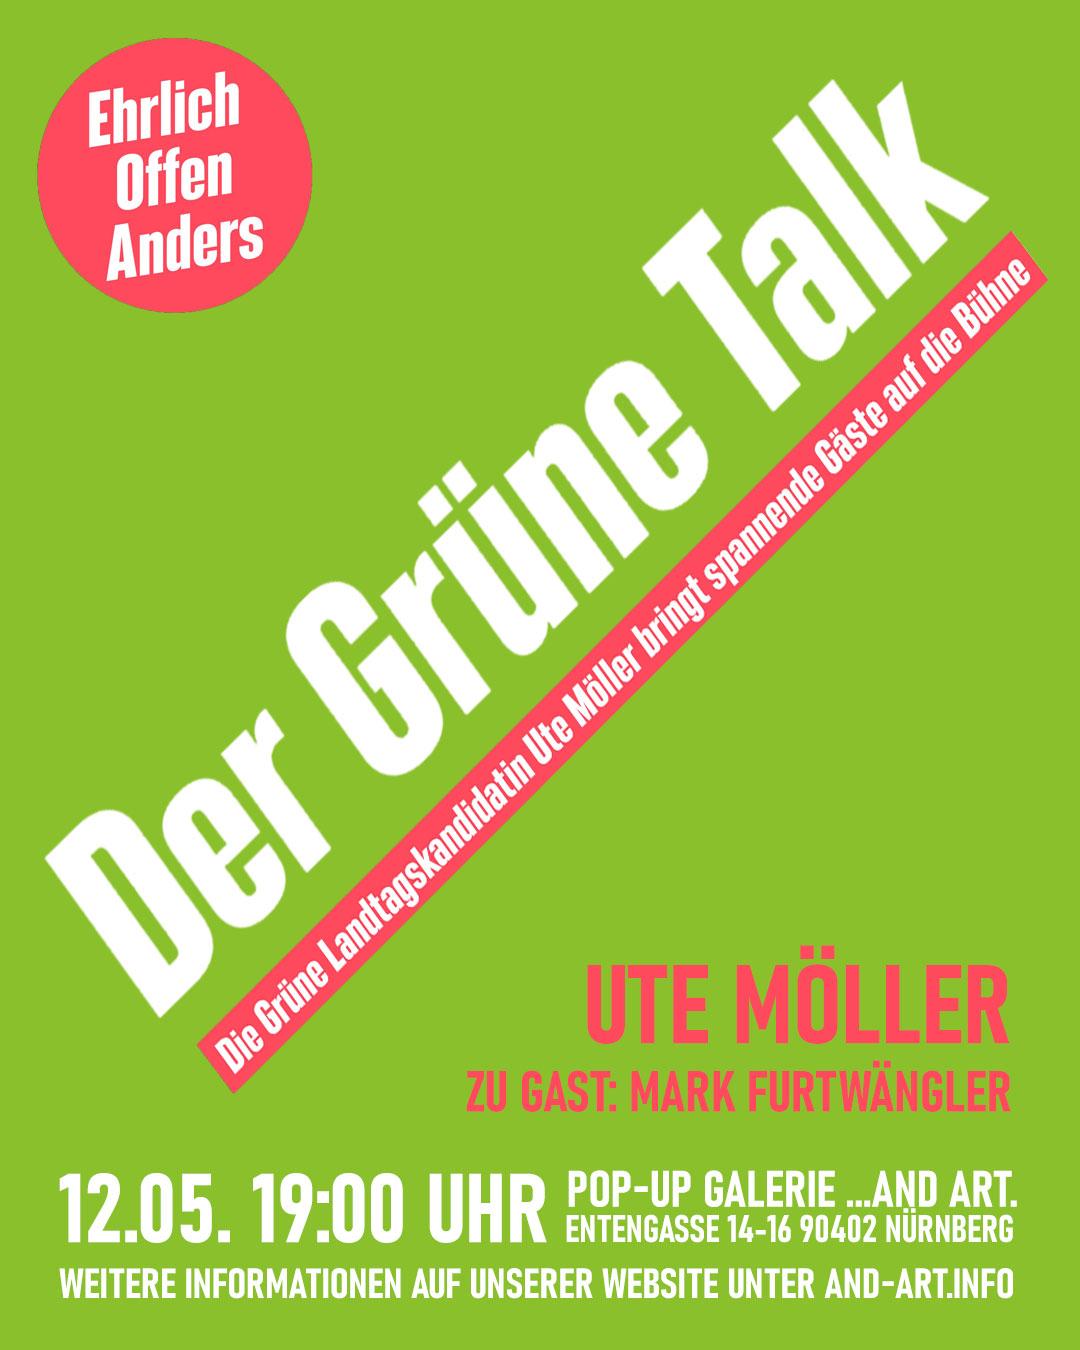 Der Grüne Talk am 12.05. mit Ute Möller und Mark Furtwängler